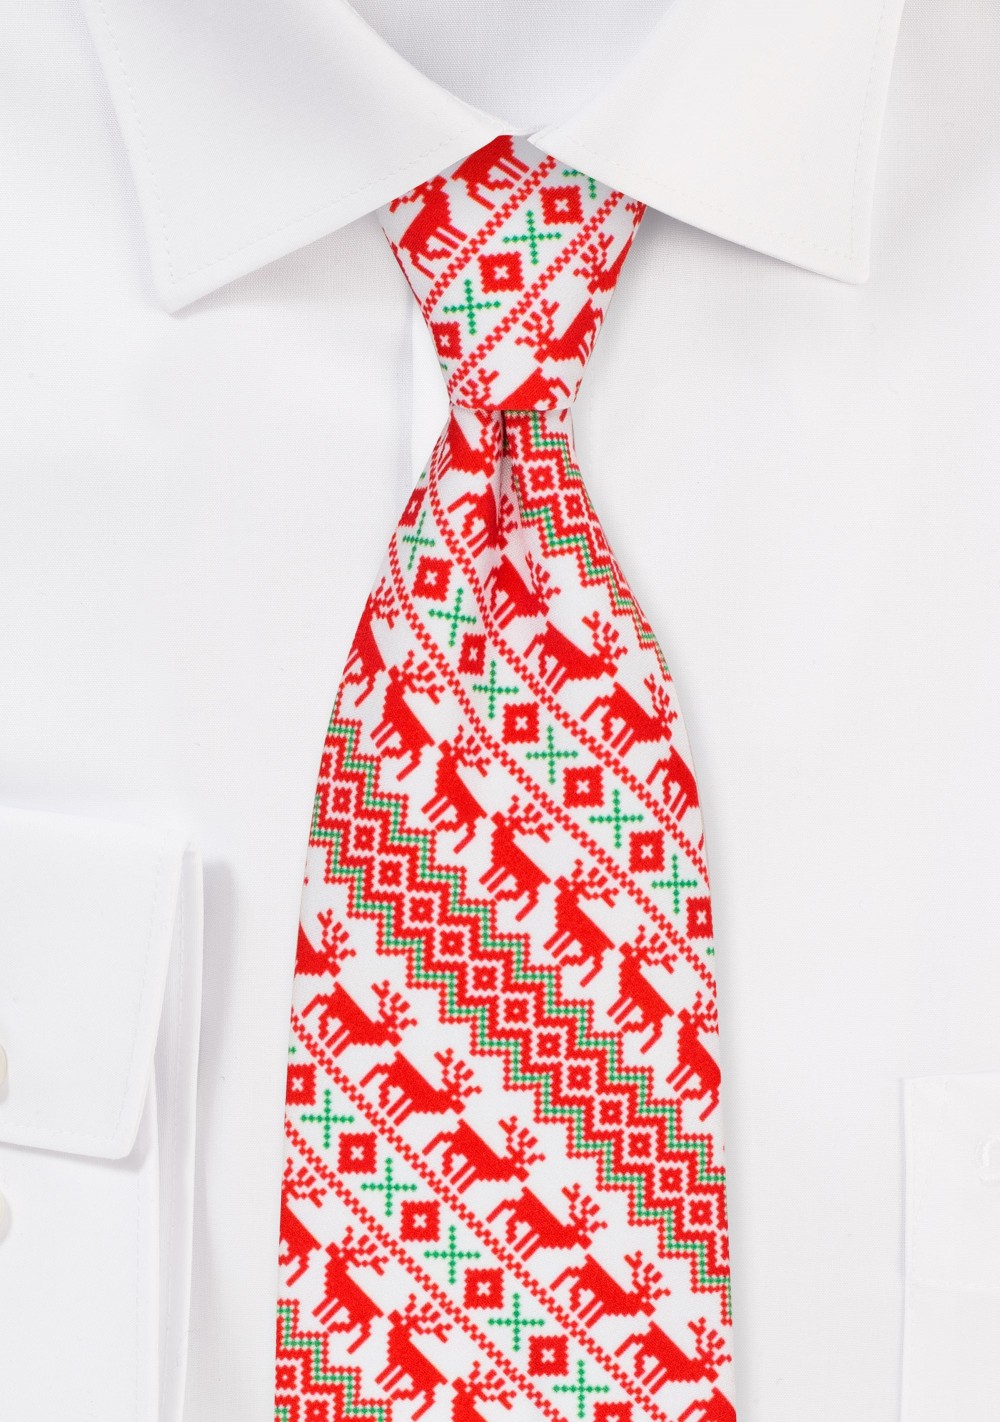 Nordic Christmas Print Necktie